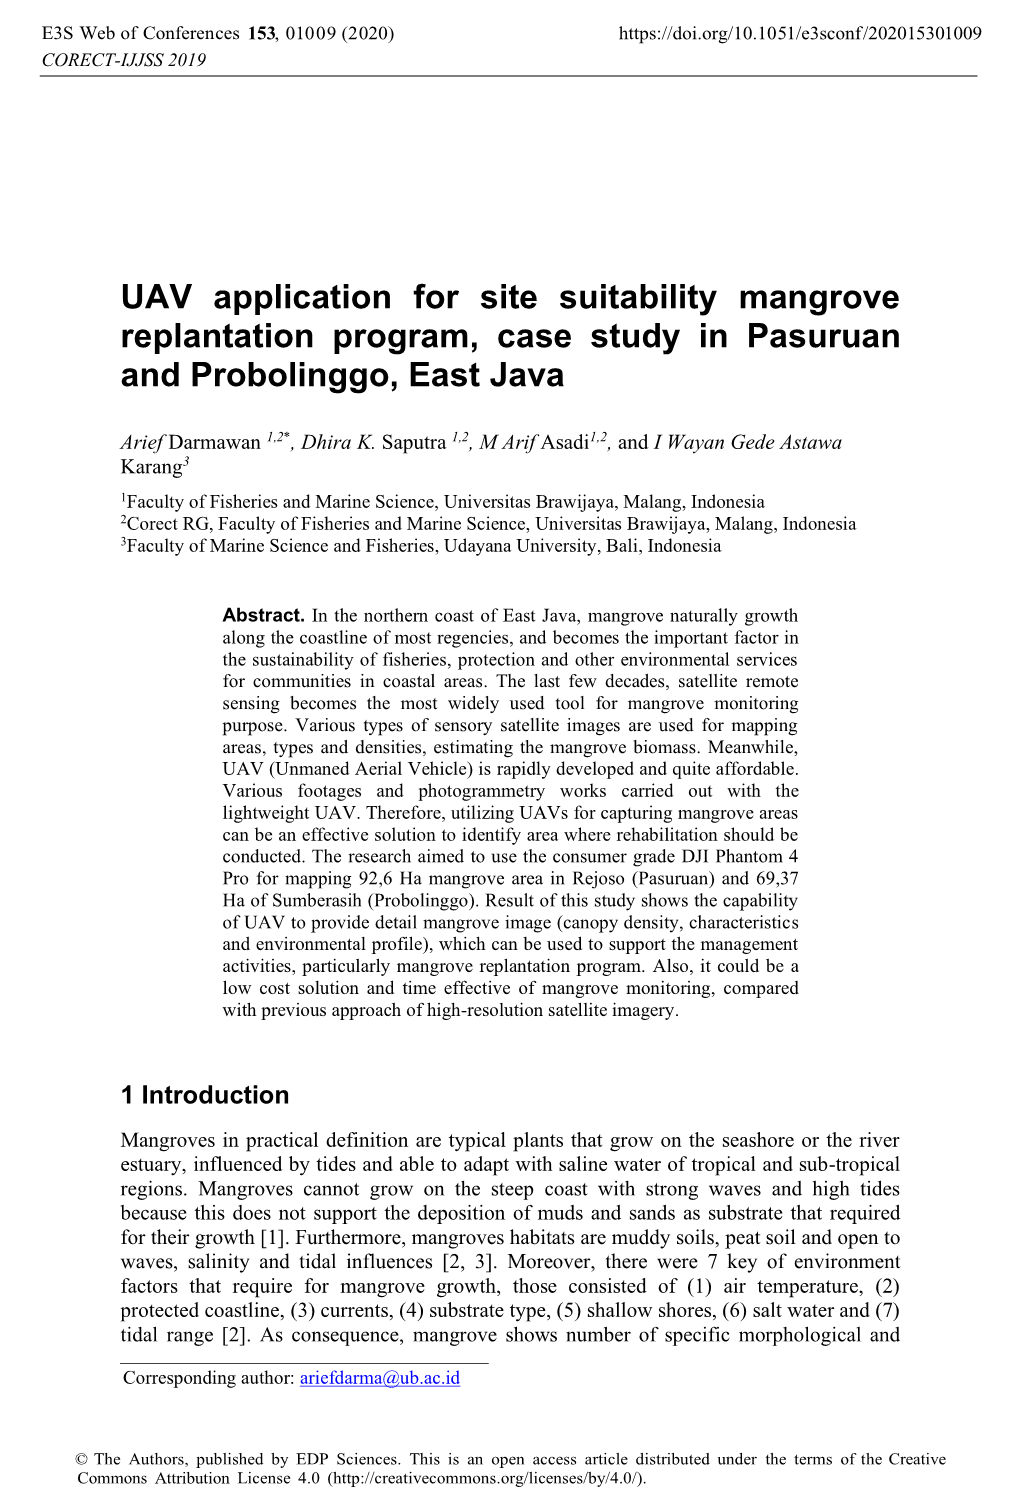 UAV Application for Site Suitability Mangrove Replantation Program, Case Study in Pasuruan and Probolinggo, East Java